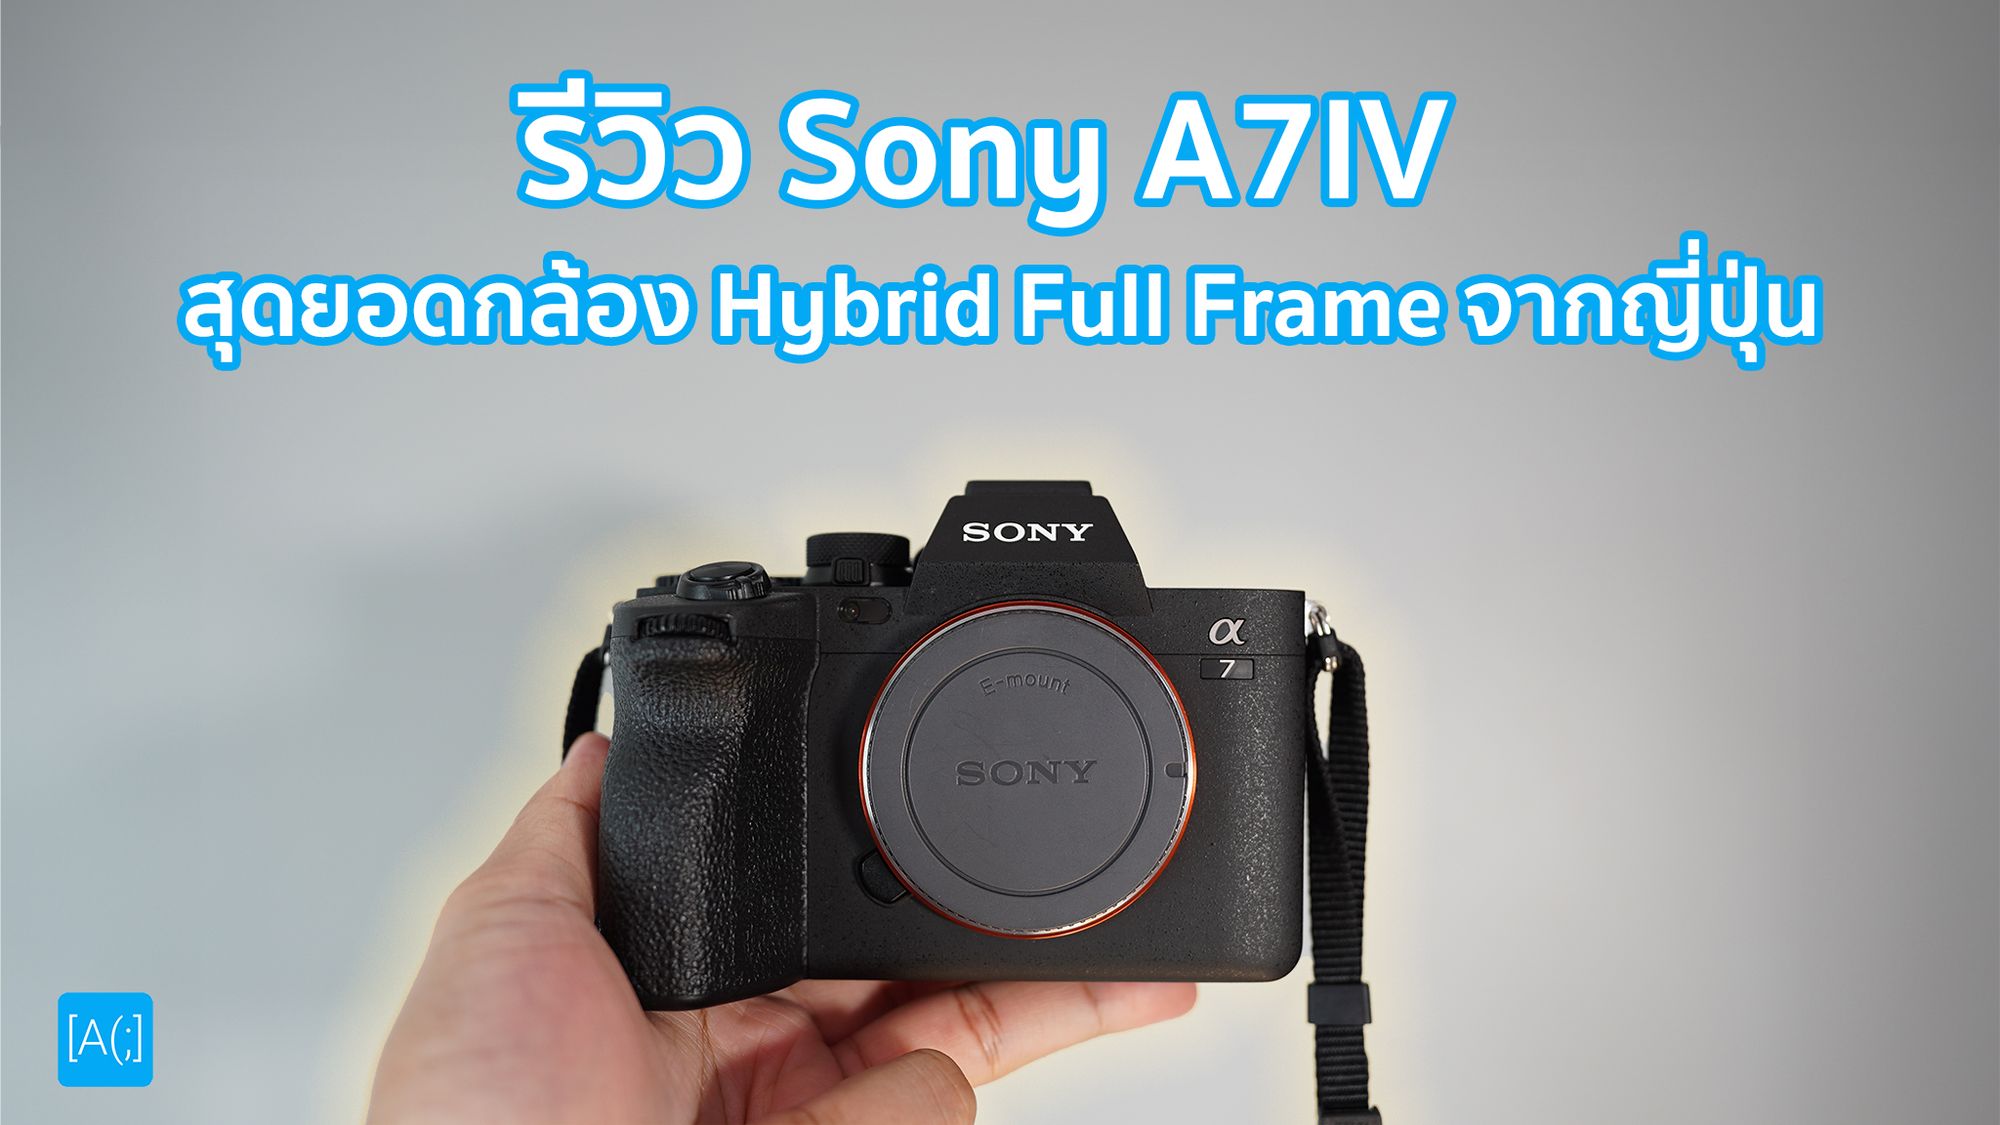 รีวิว Sony A7IV สุดยอดกล้อง Hybrid Full Frame จากญี่ปุ่น